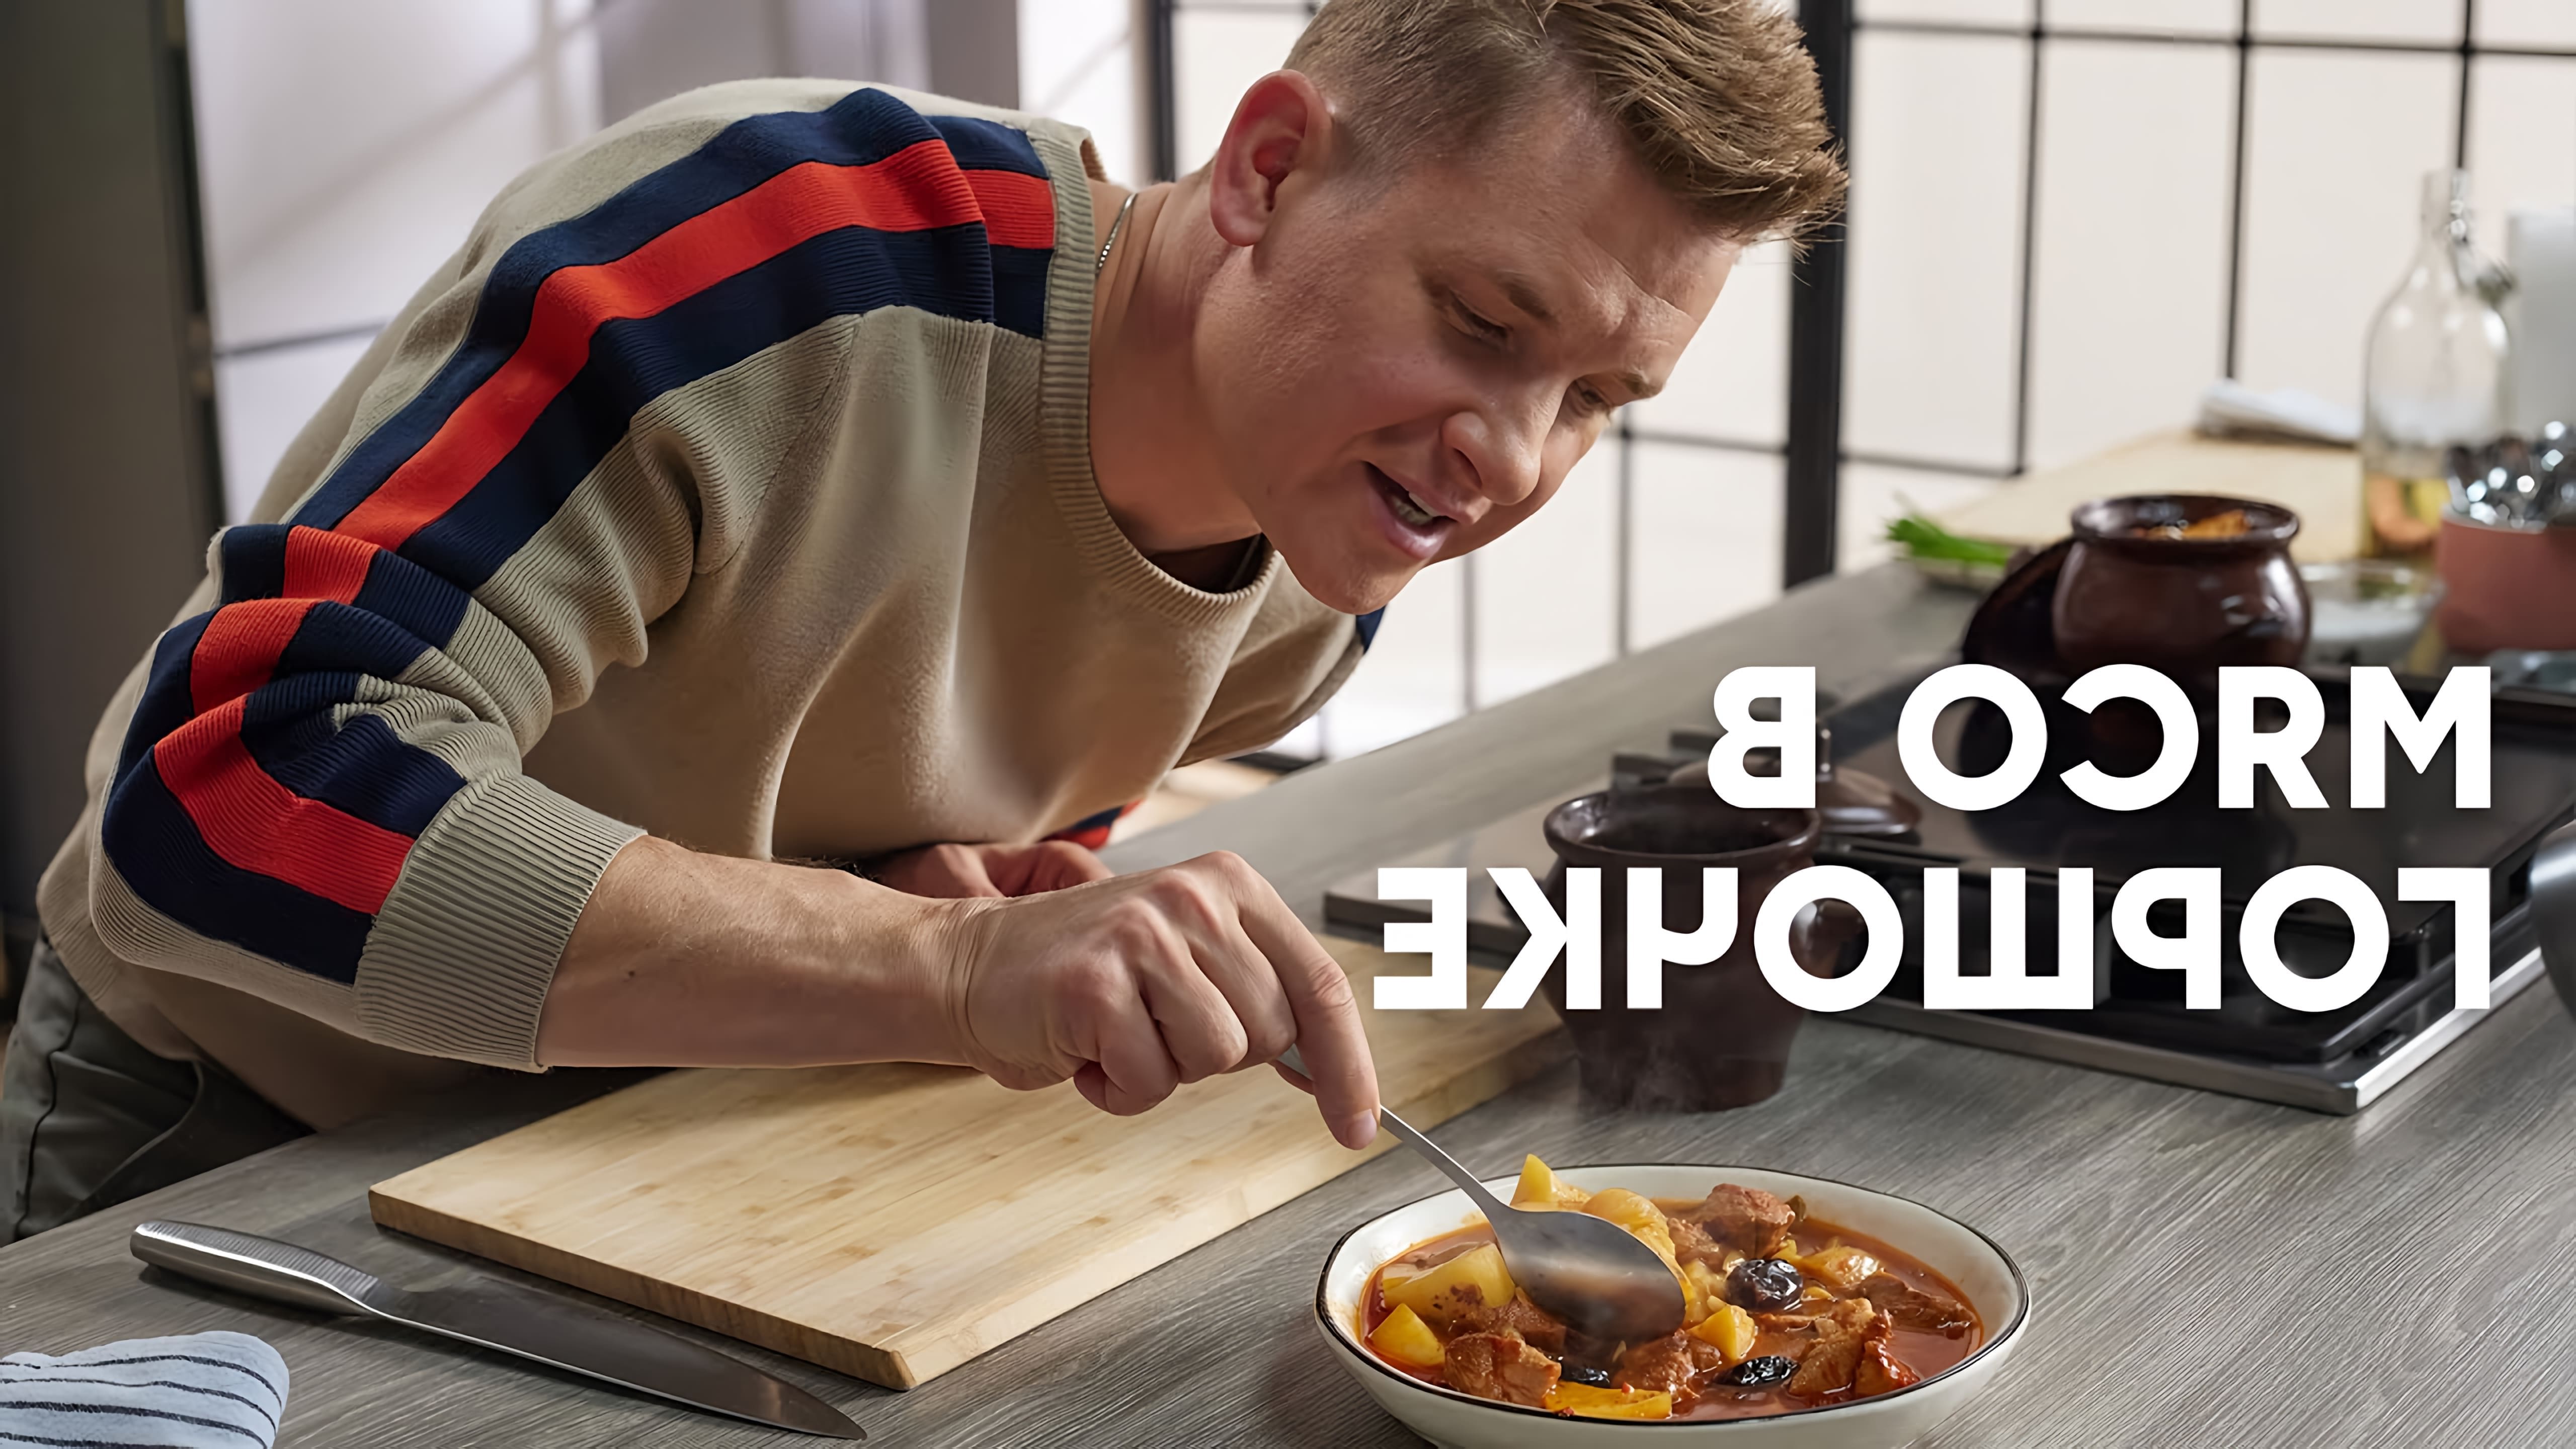 В этом видео шеф-повар Белькович показывает, как приготовить мясо с картошкой в горшочках